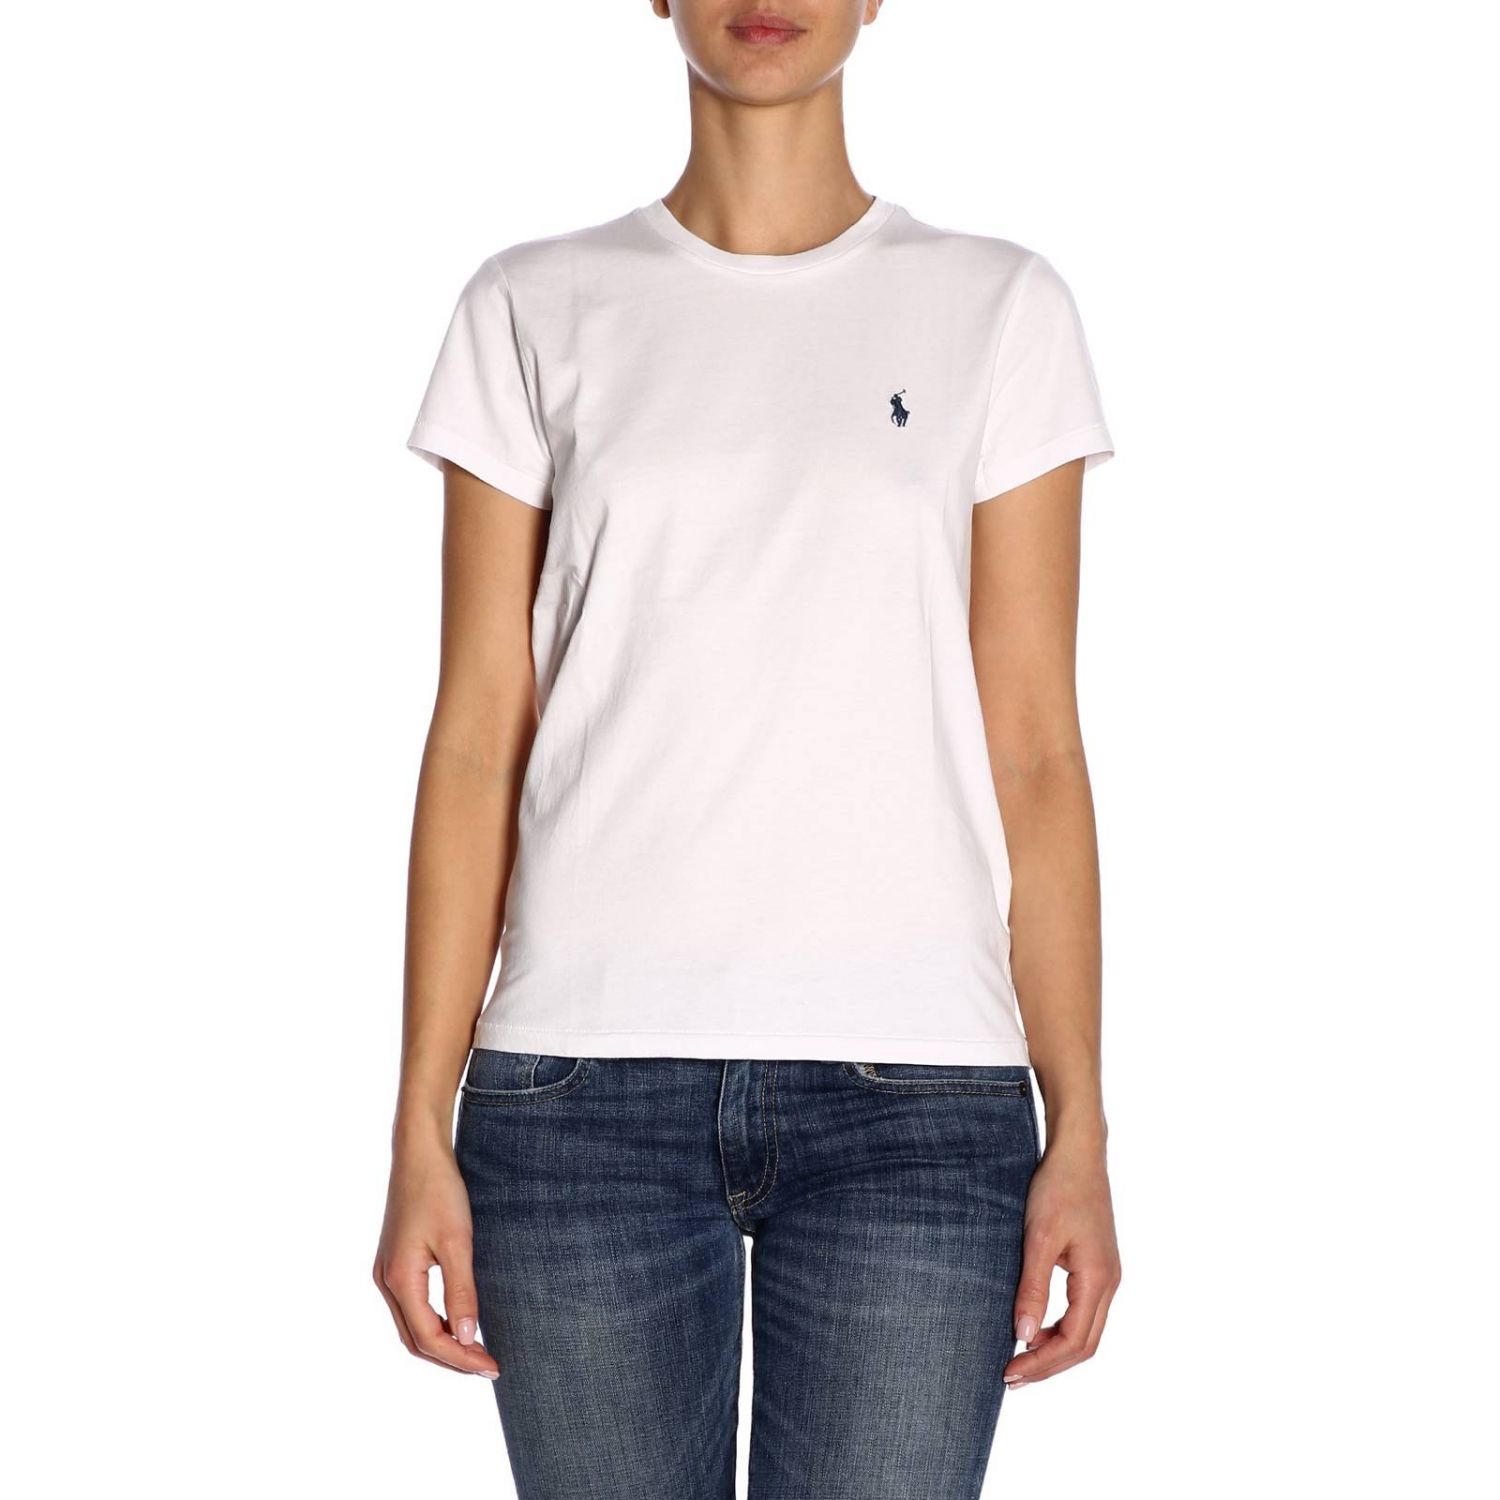 Polo Ralph Lauren Outlet: T-shirt women - White | T-Shirt Polo Ralph ...